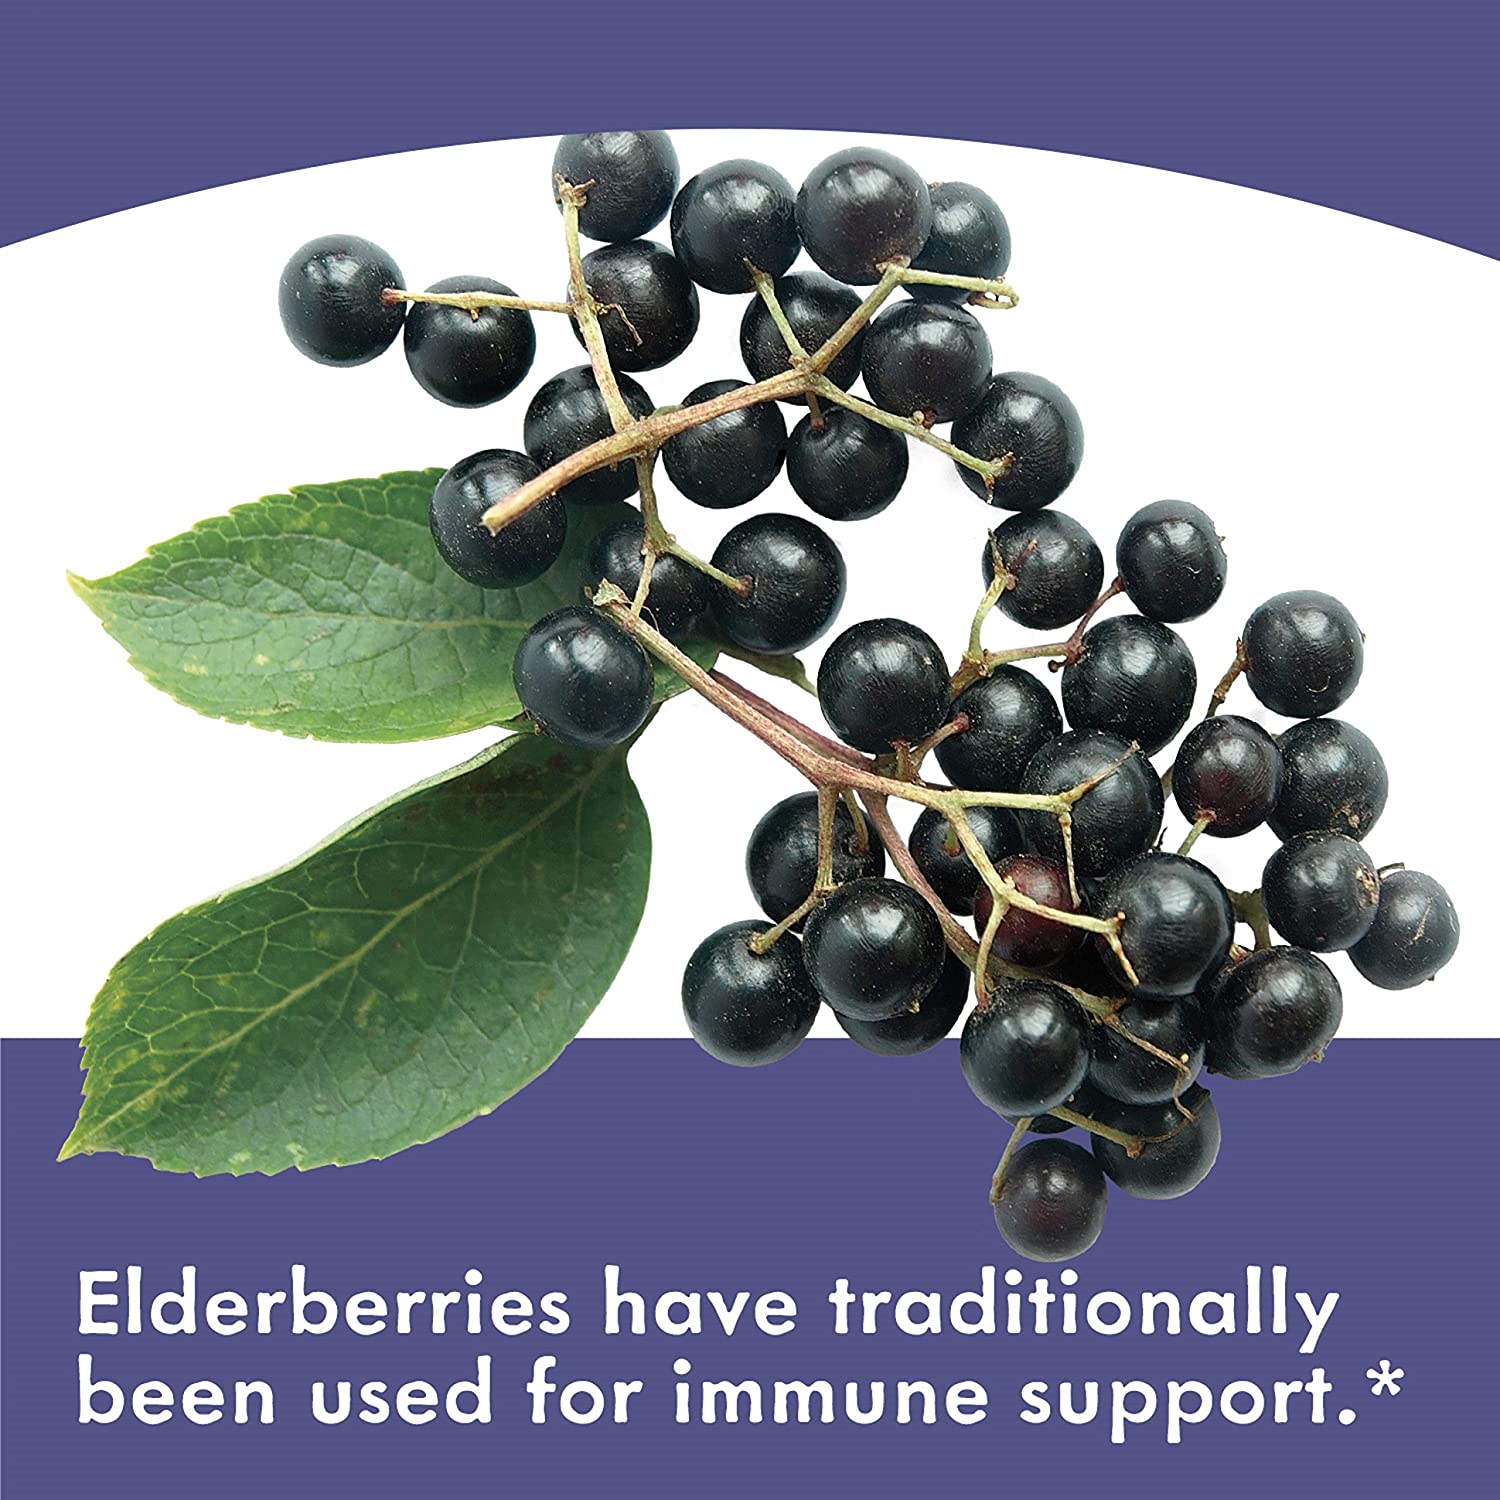 อาหารเสริม sambucus elderberry ยี่ห้อที่ขายดีเป็นอันดับที่ 1 ของอเมริกา